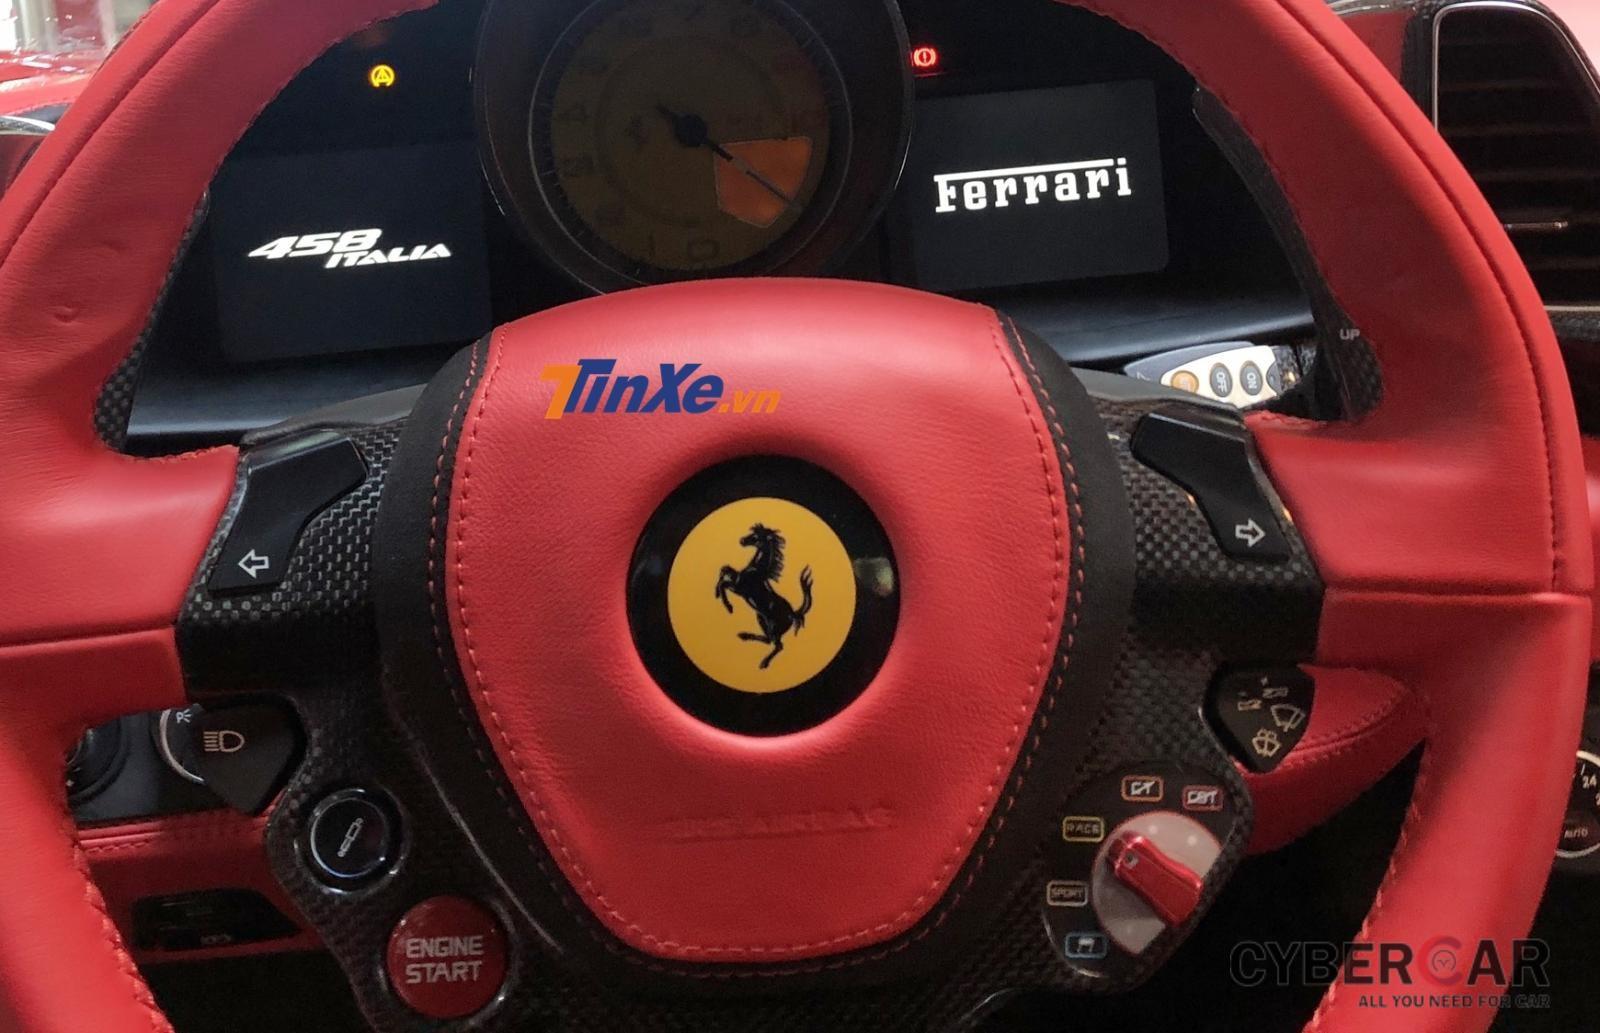 Siêu xe Ferrari 458 Italia Liberty Walk không được độ động cơ nhưng đã thay đổi ống xả của Fi